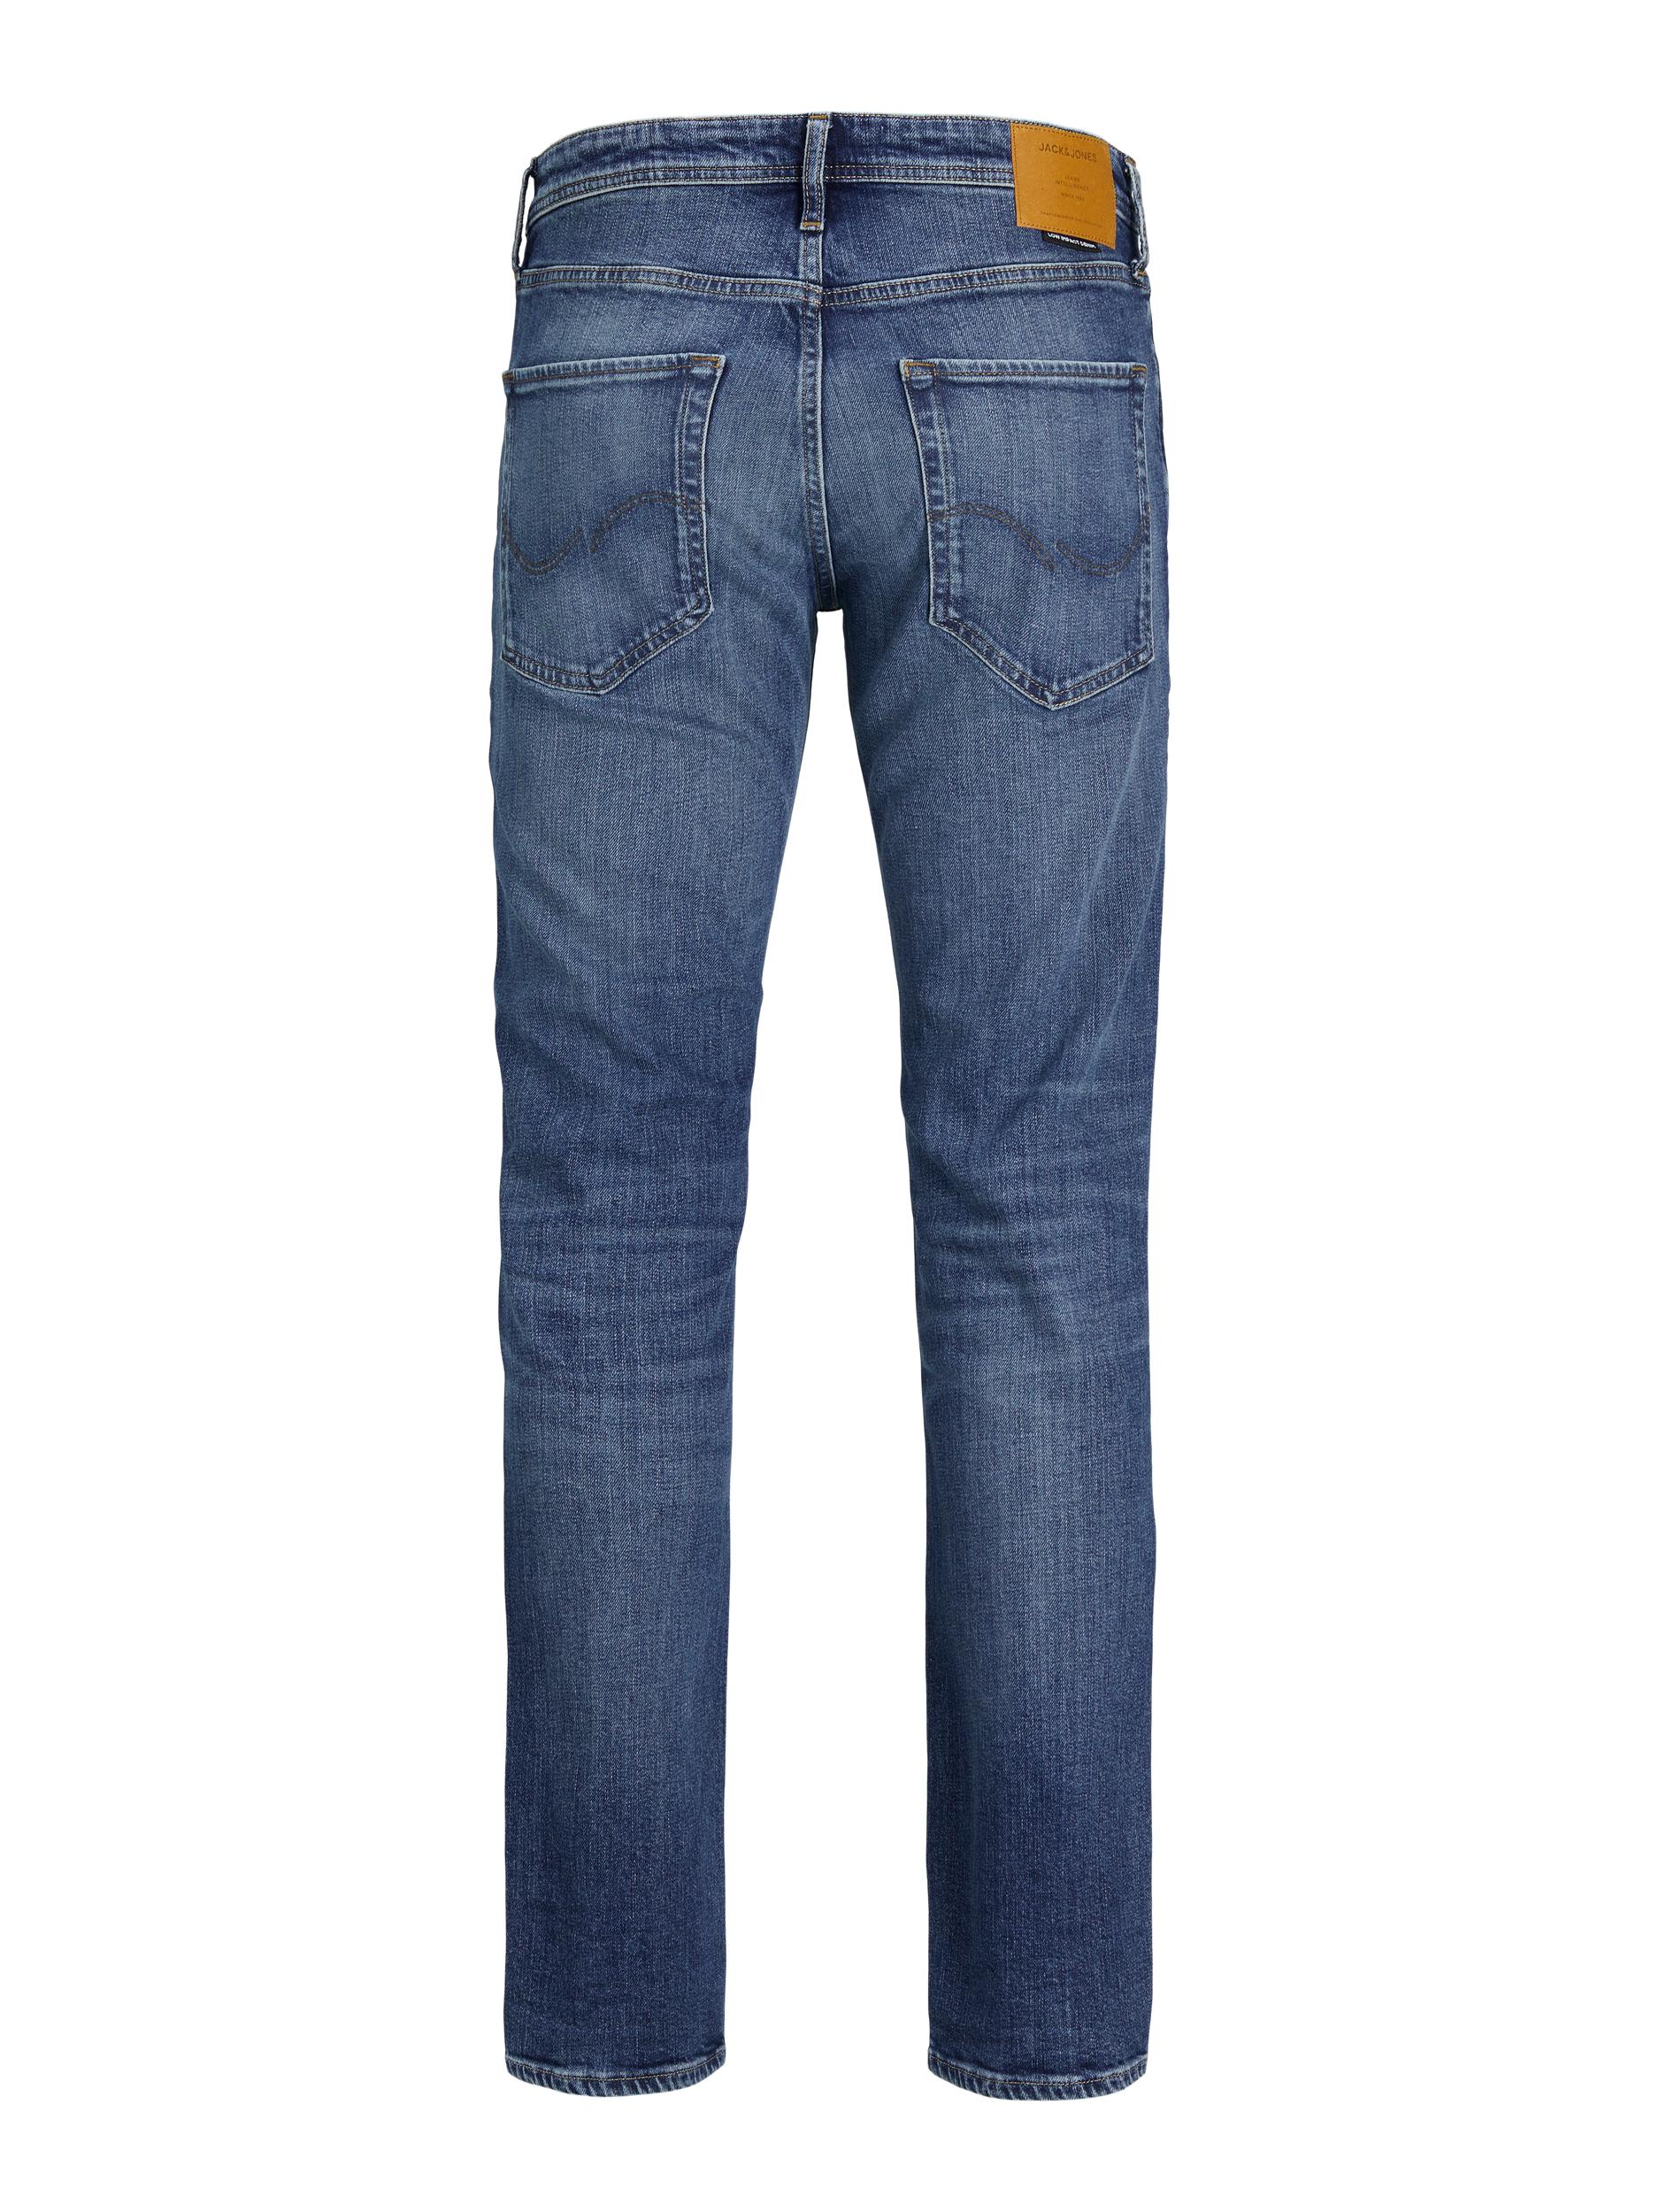  Clark Jeans, Blue Denim, W36/L36